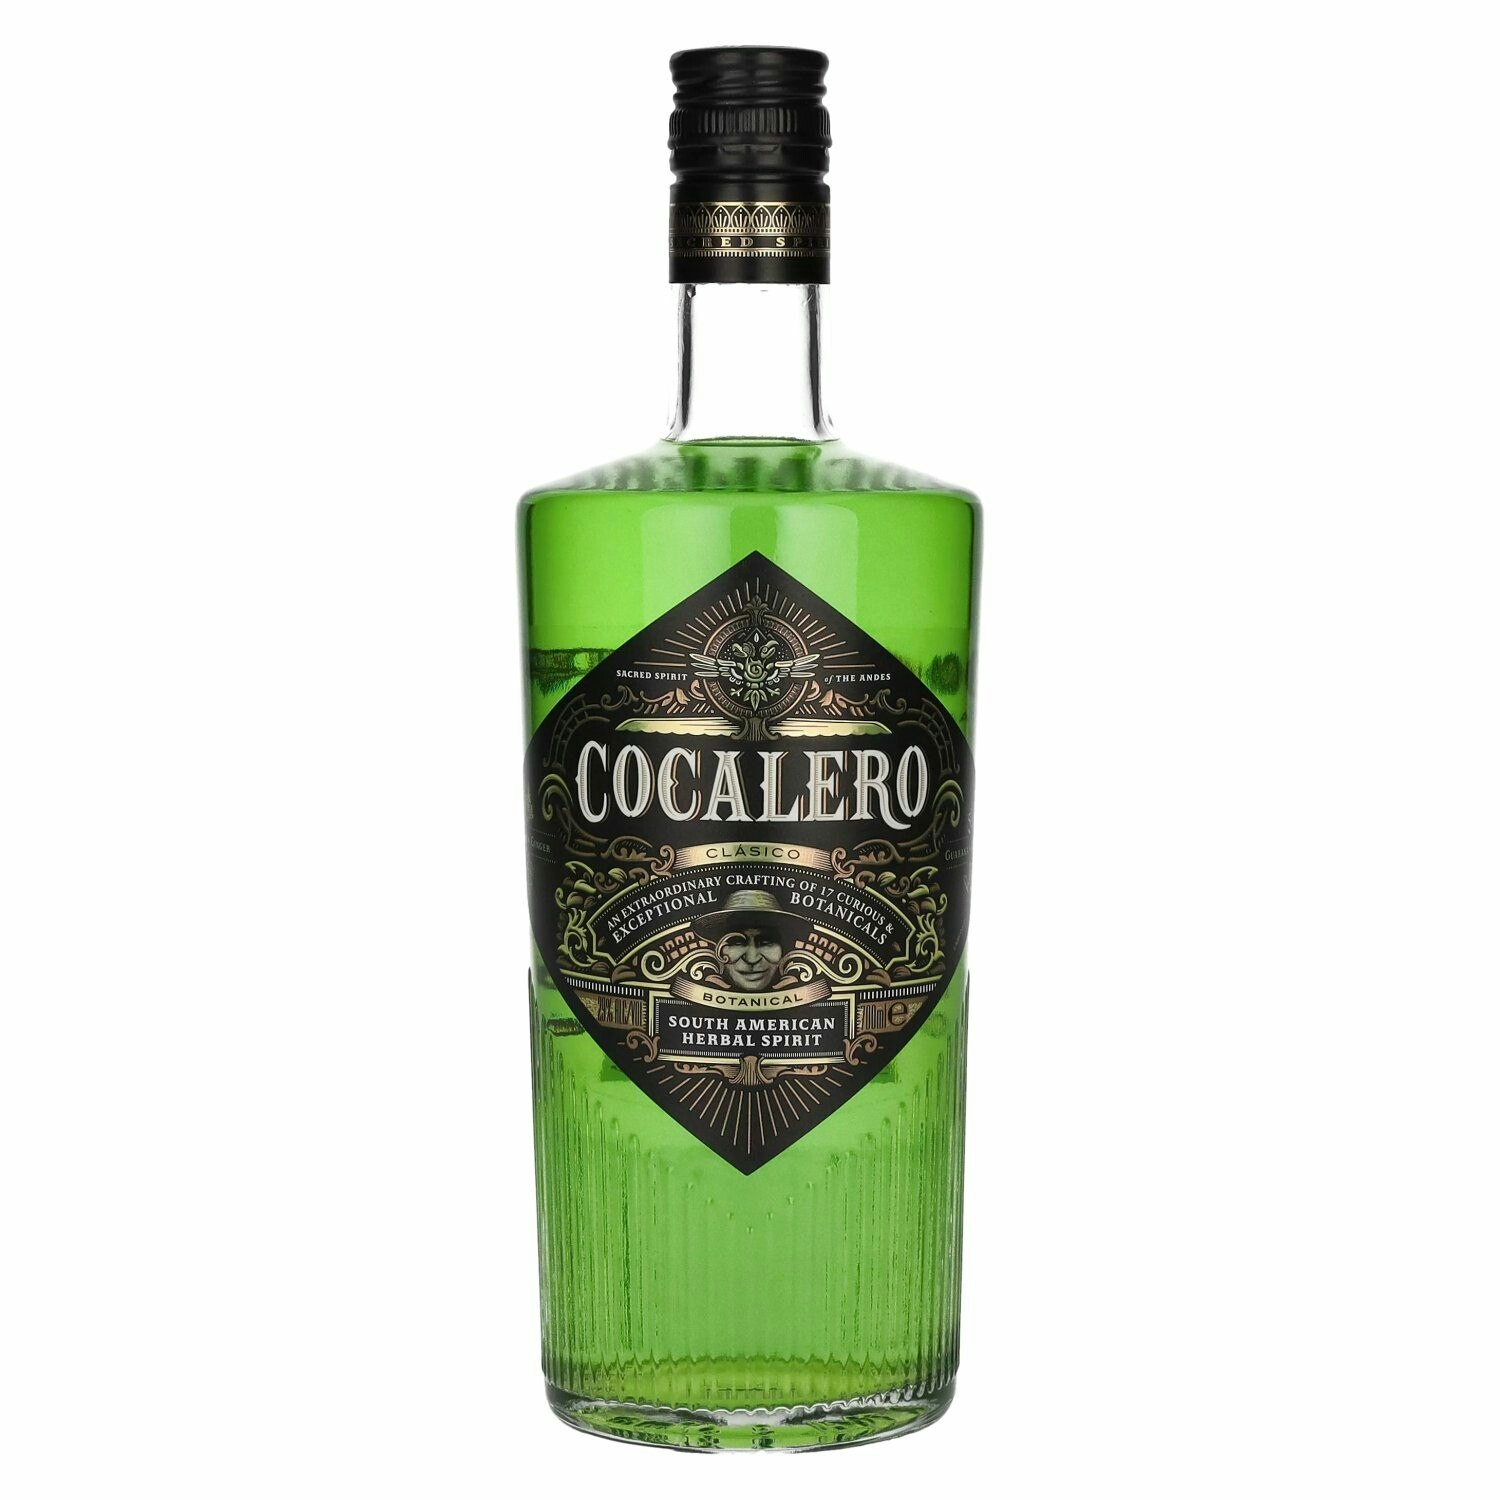 Cocalero CLÁSICO South American Herbal Liqueur 29% Vol. 0,7l